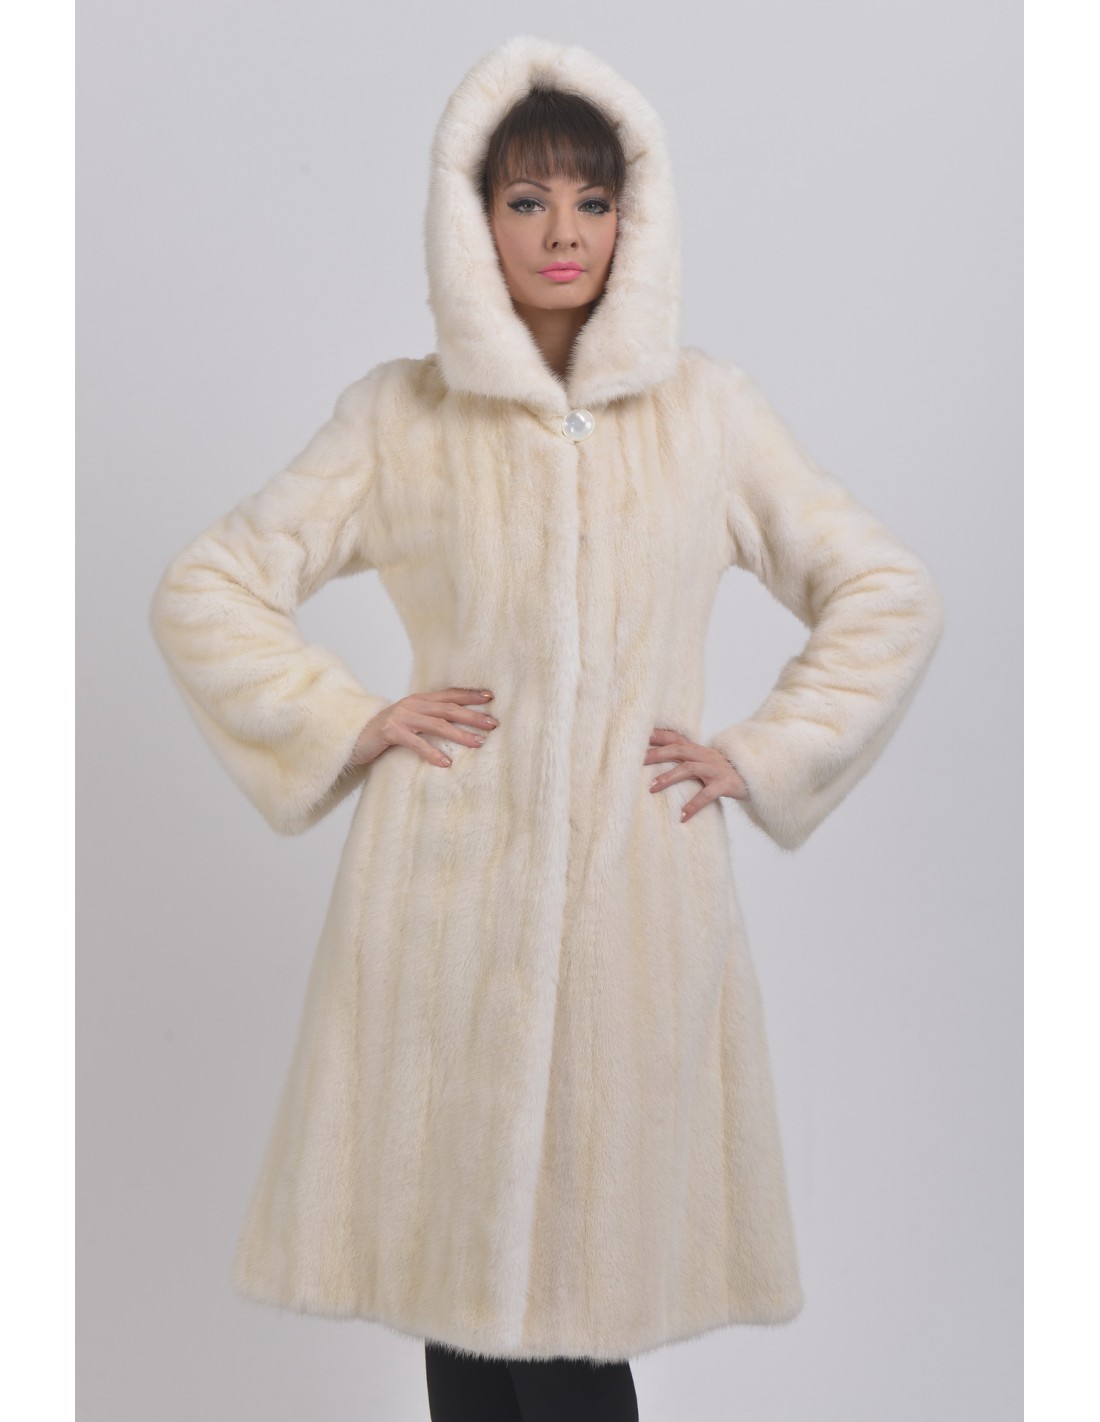 White Mink Fur Coat White Fur Coat Mink Coat Luxury Fur Coat Mink Fur Coat  Fur Coat Gift -  Israel